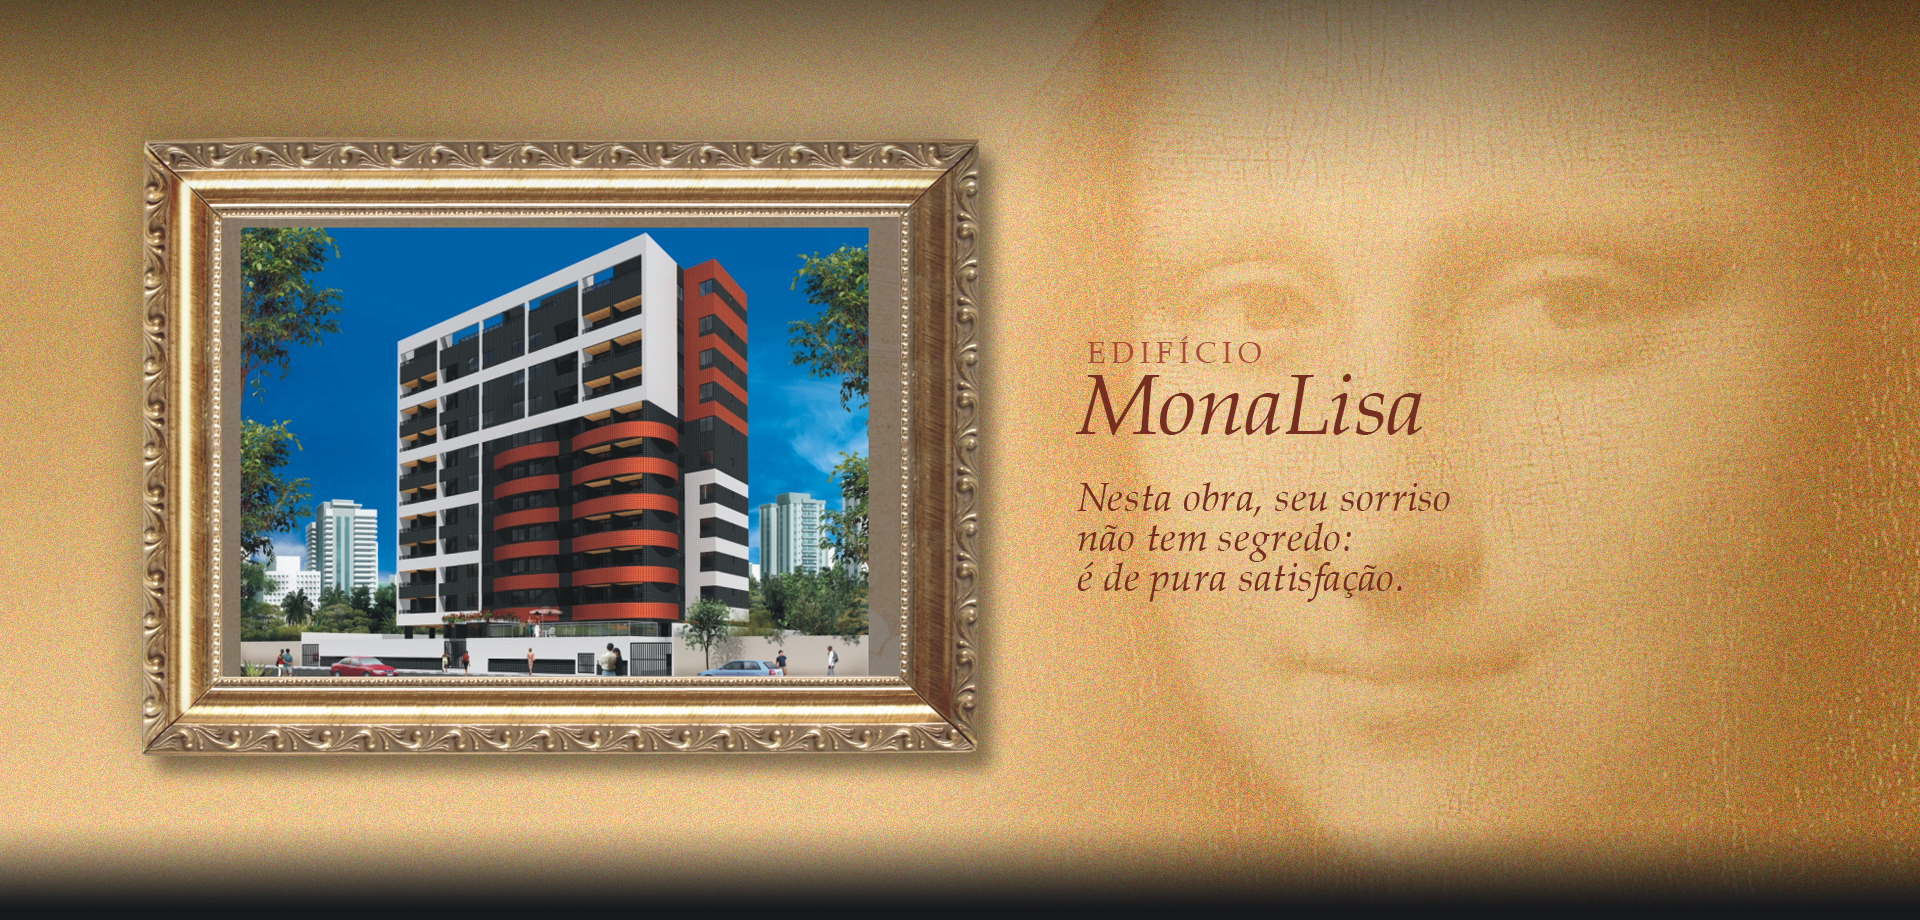 Edifício Monalisa